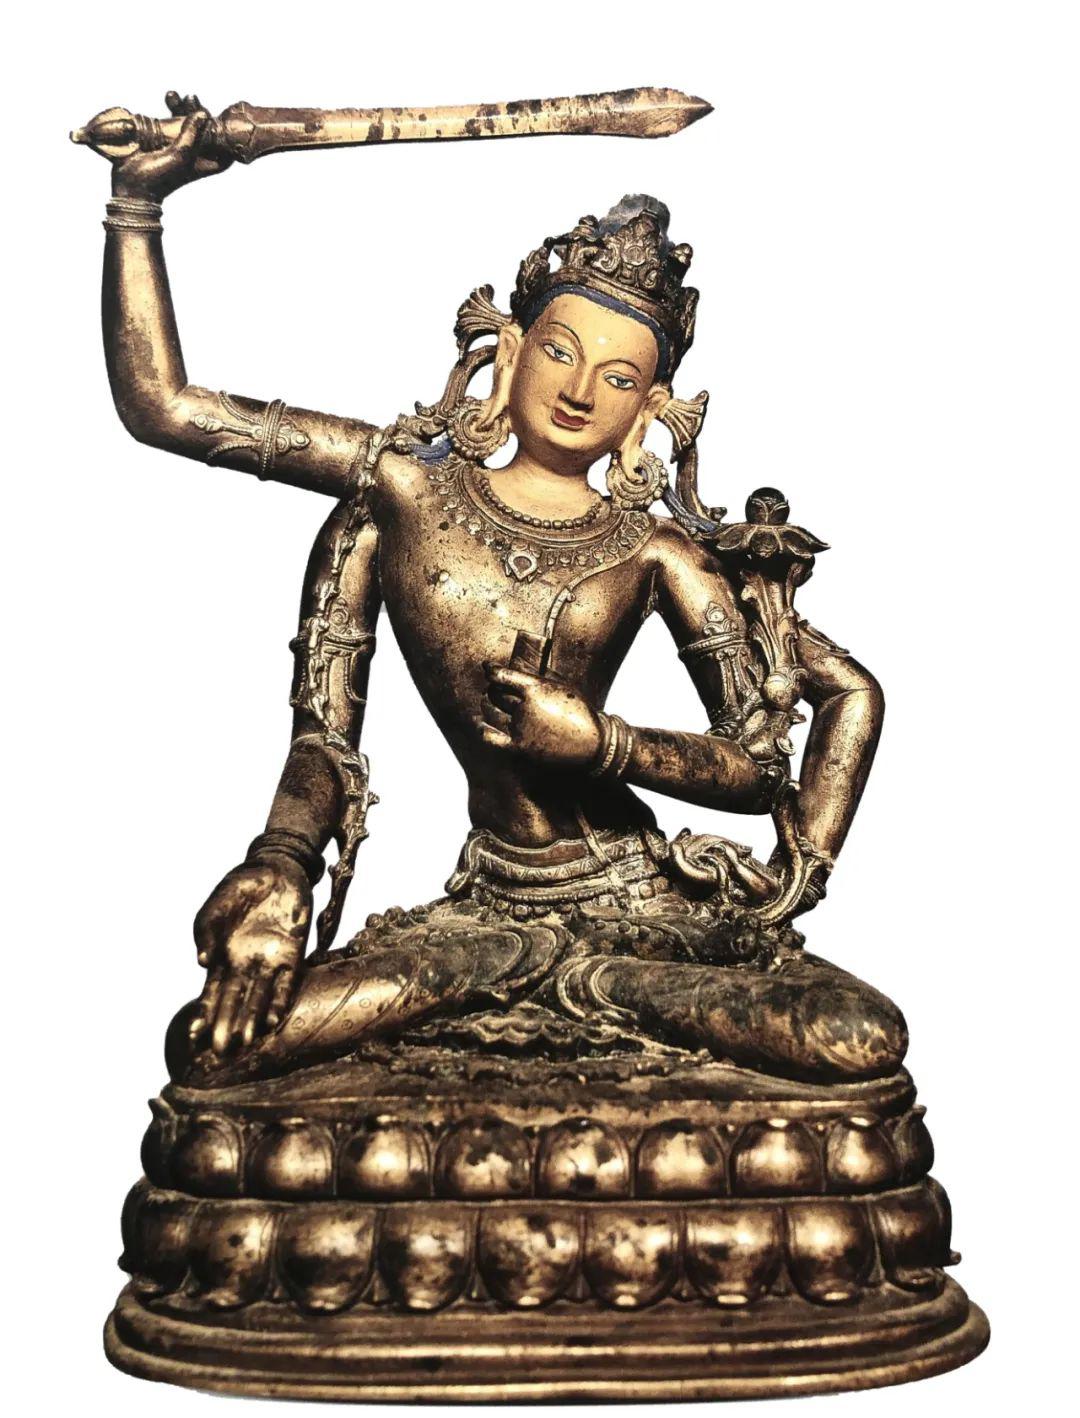 印度佛教文殊菩萨图片